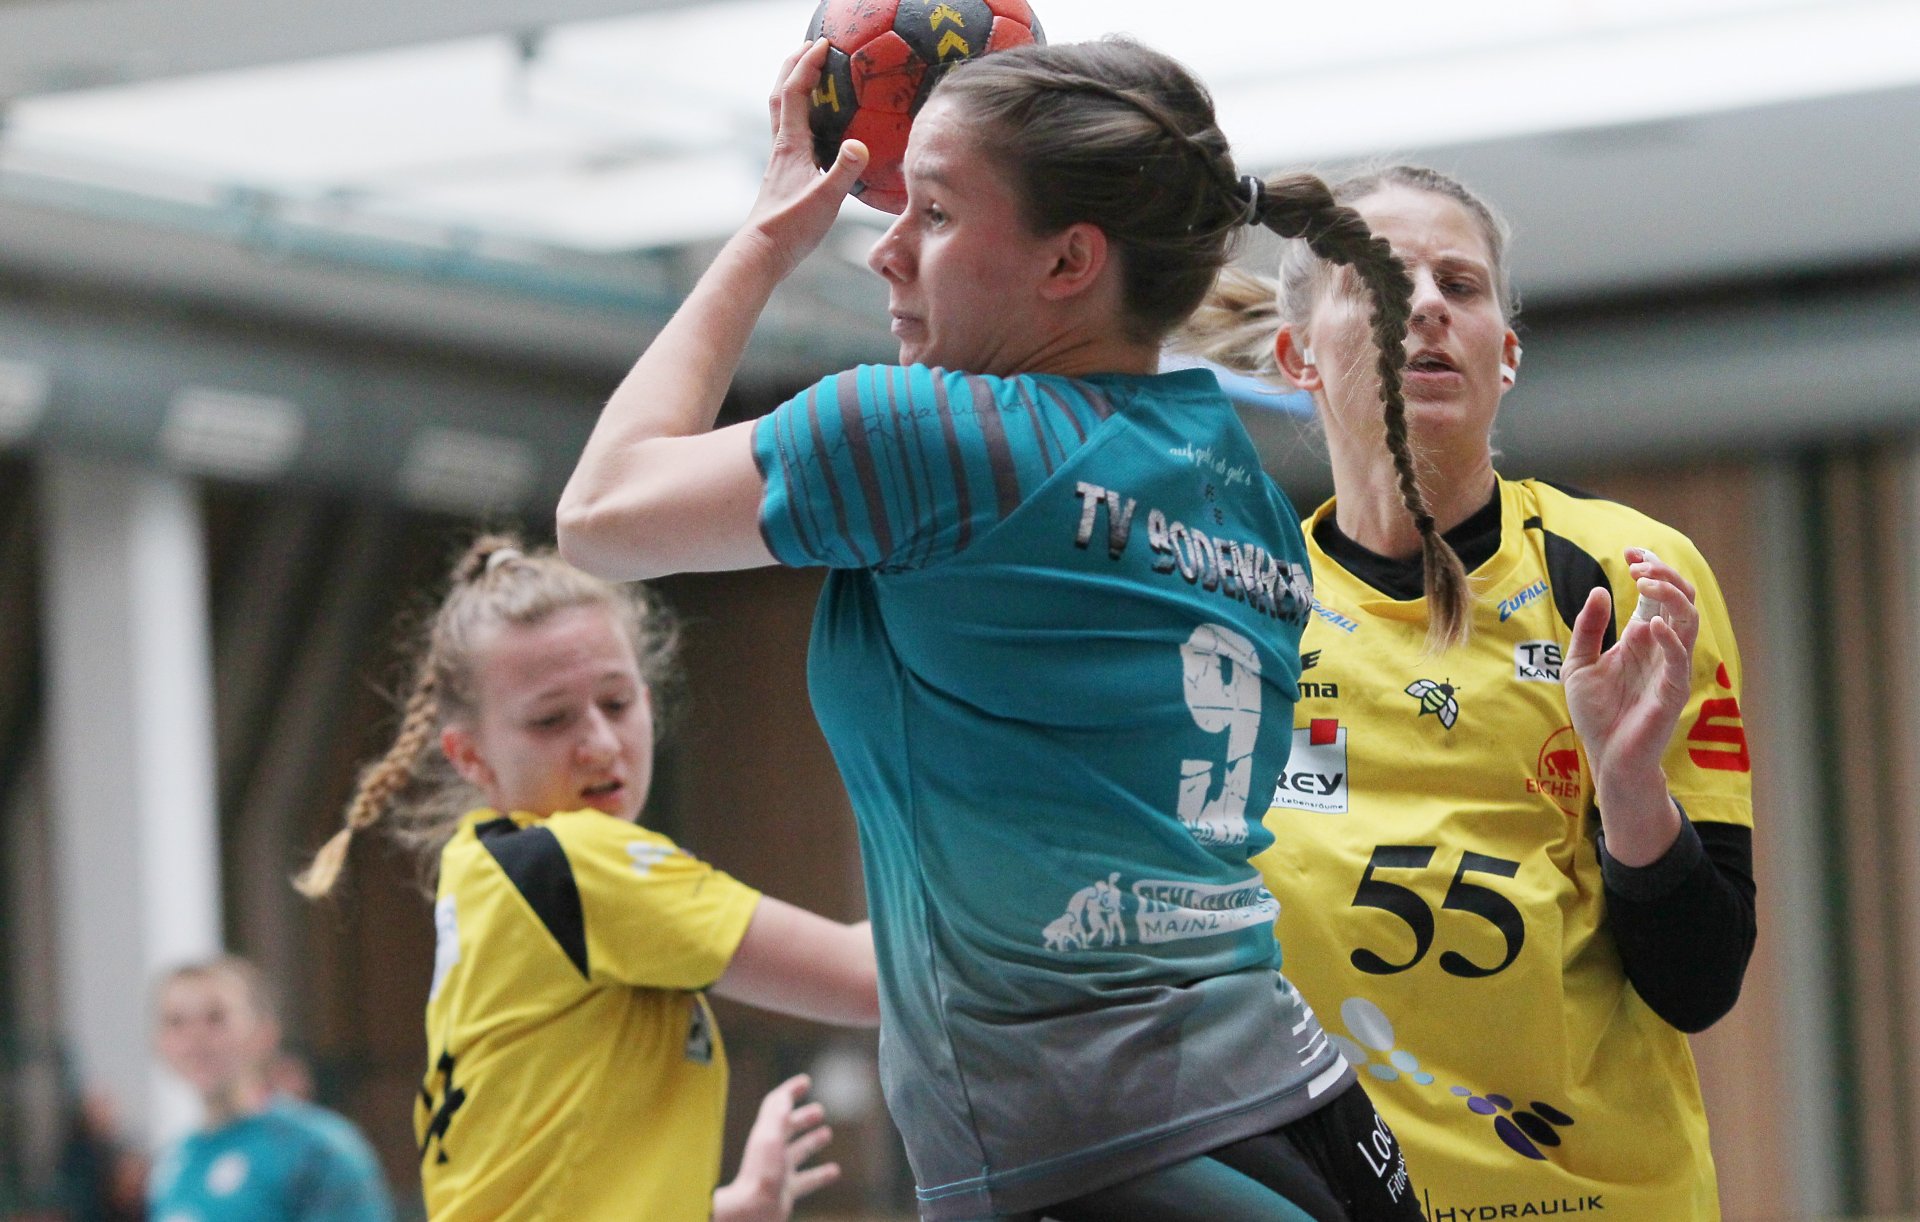 Zu einem Topteam der Oberliga hat sich in dem langen wettkampffreien Zeitraum  der TV Bodenheim entwickelt. Dafür war de positive Entwicklung von jungen Spielerinnen wie Spielmacherin Emily Reese entscheidend. 